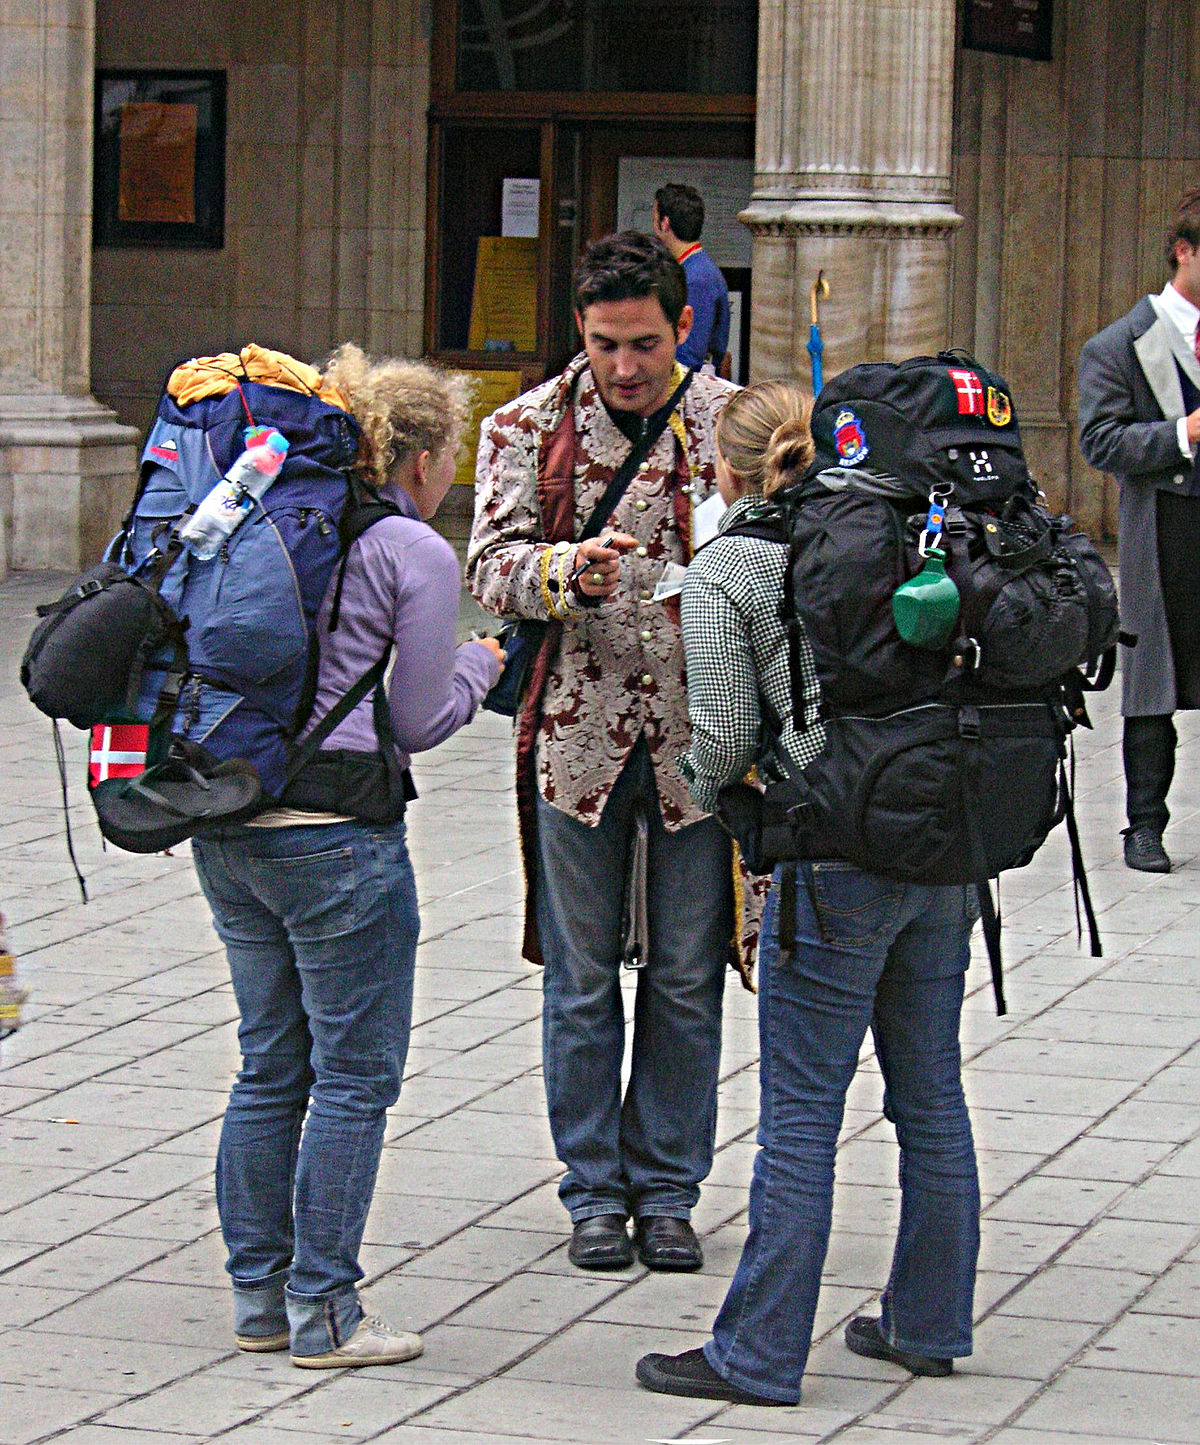 Huge-Backpacks-On-Tourists